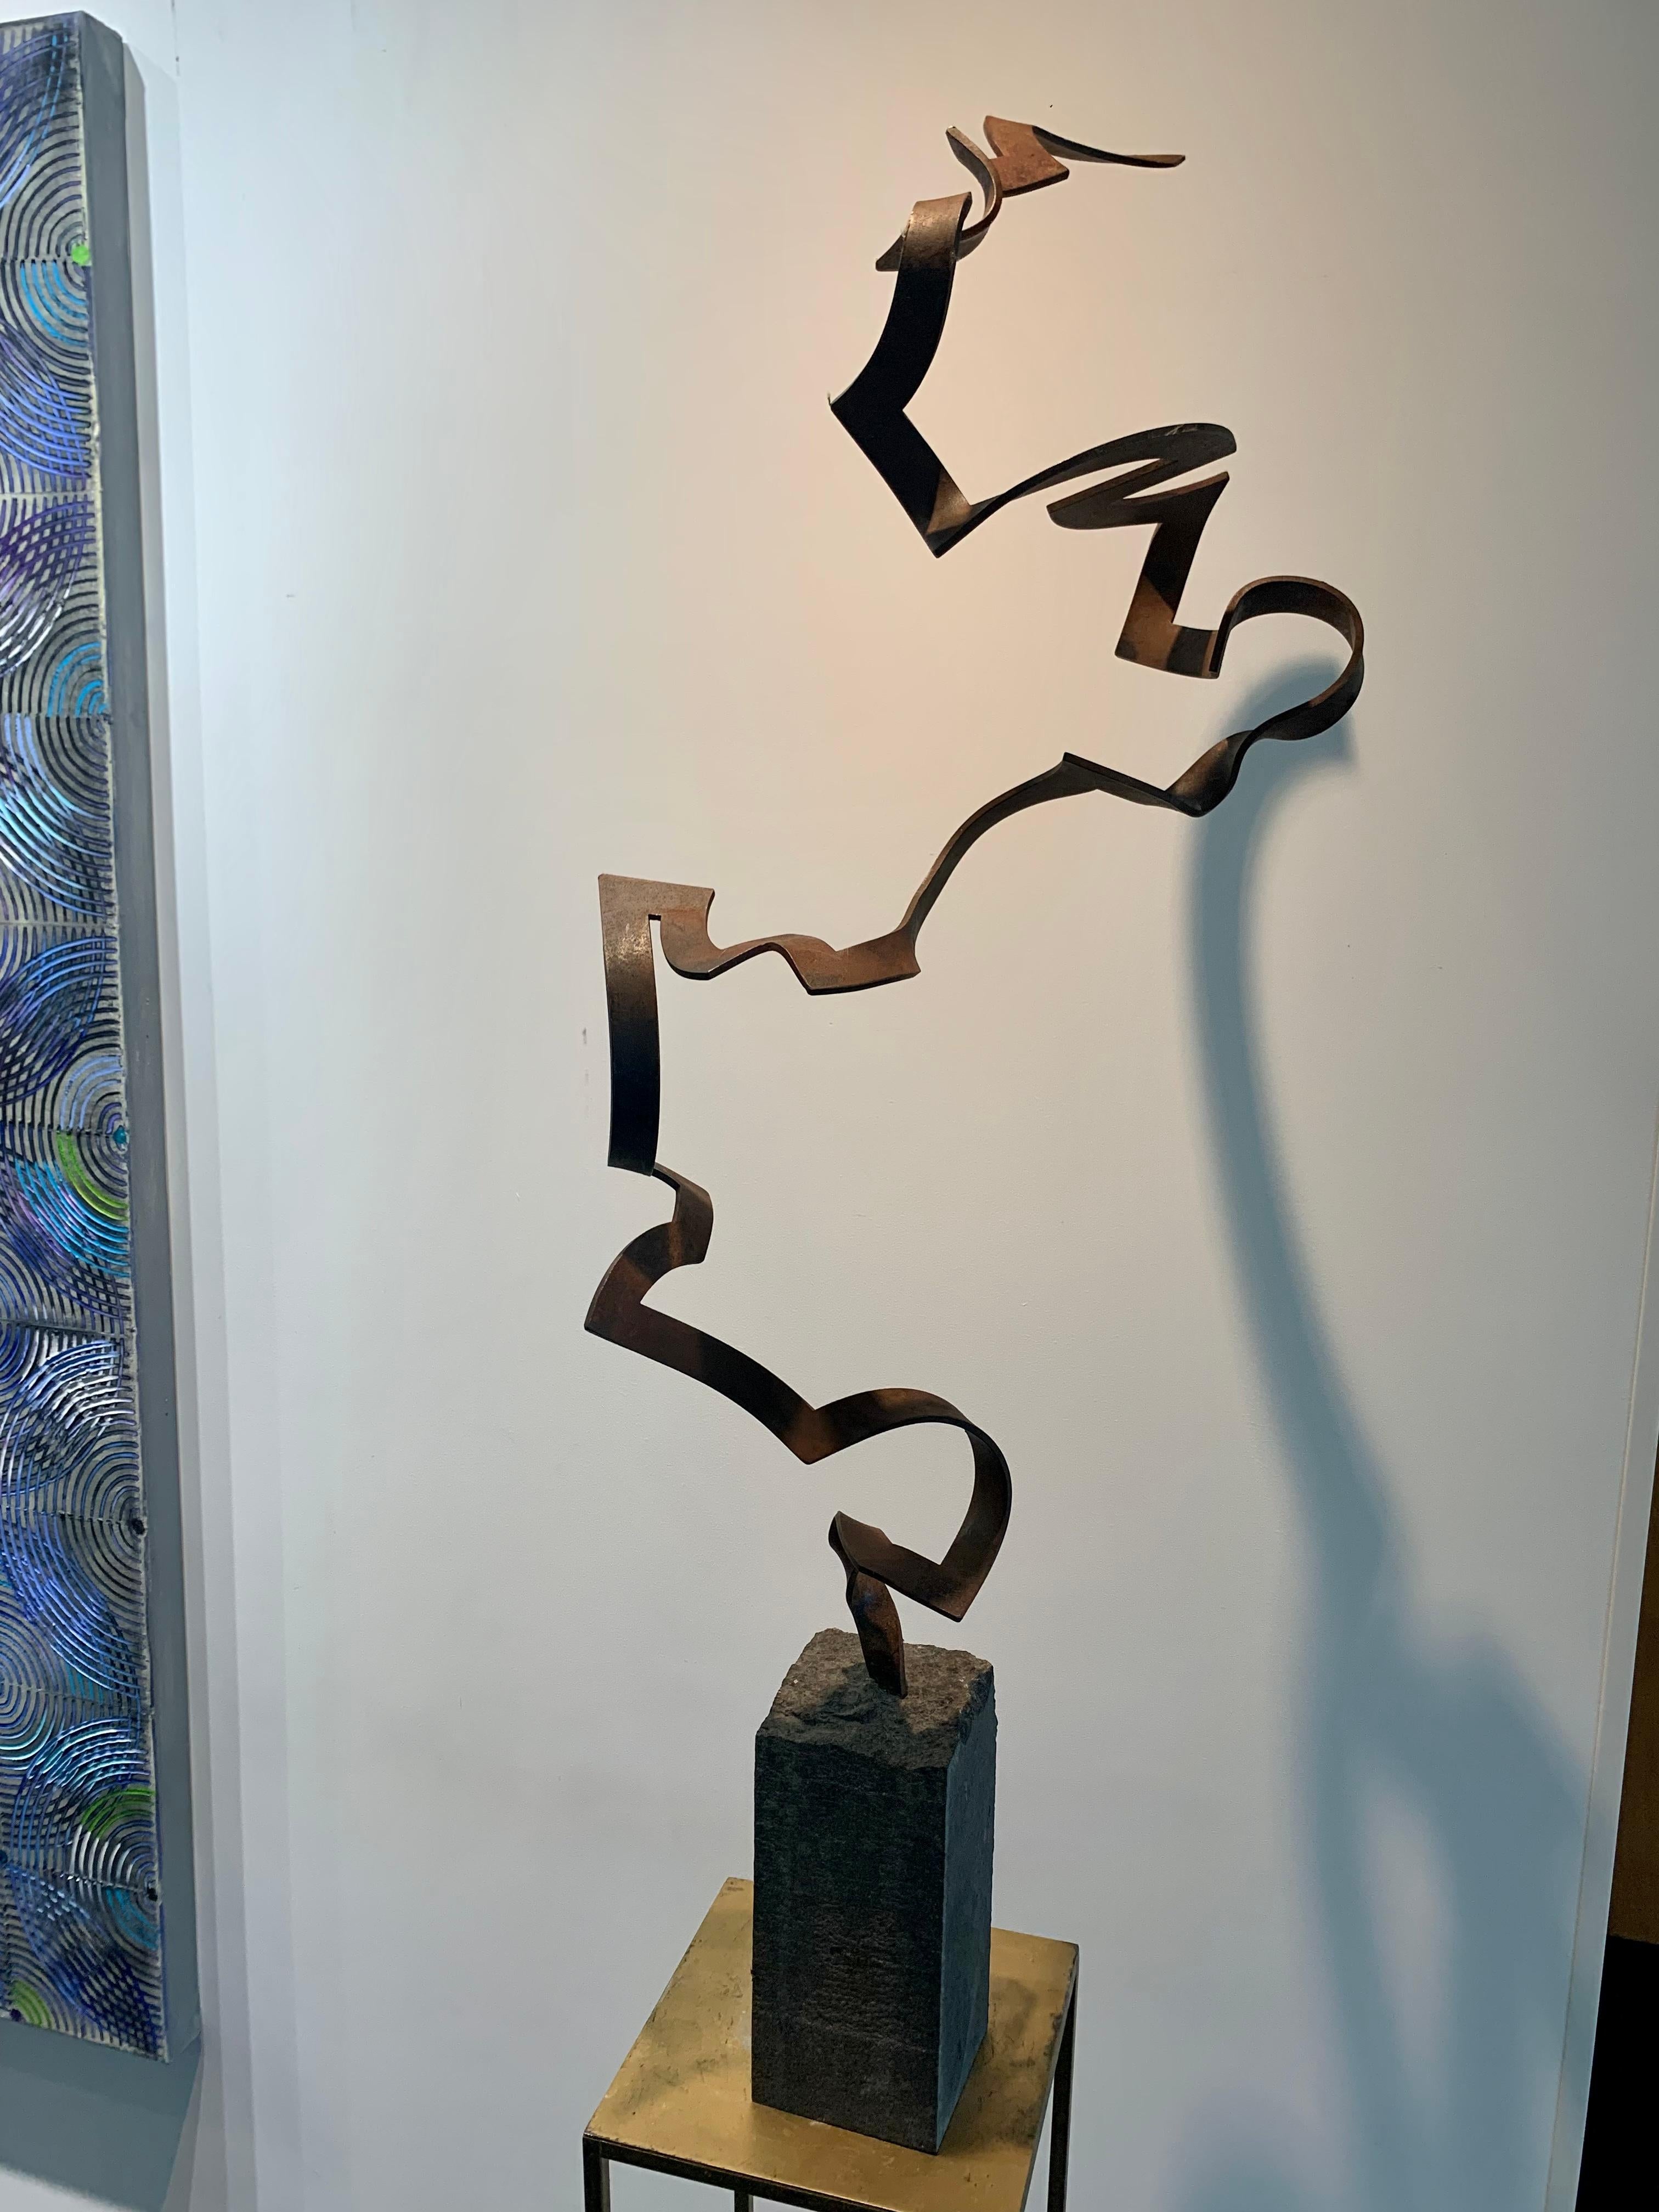 Steel Dance by Kuno Vollet Contemporary Steel Sculpture for indoor or outdoor For Sale 8